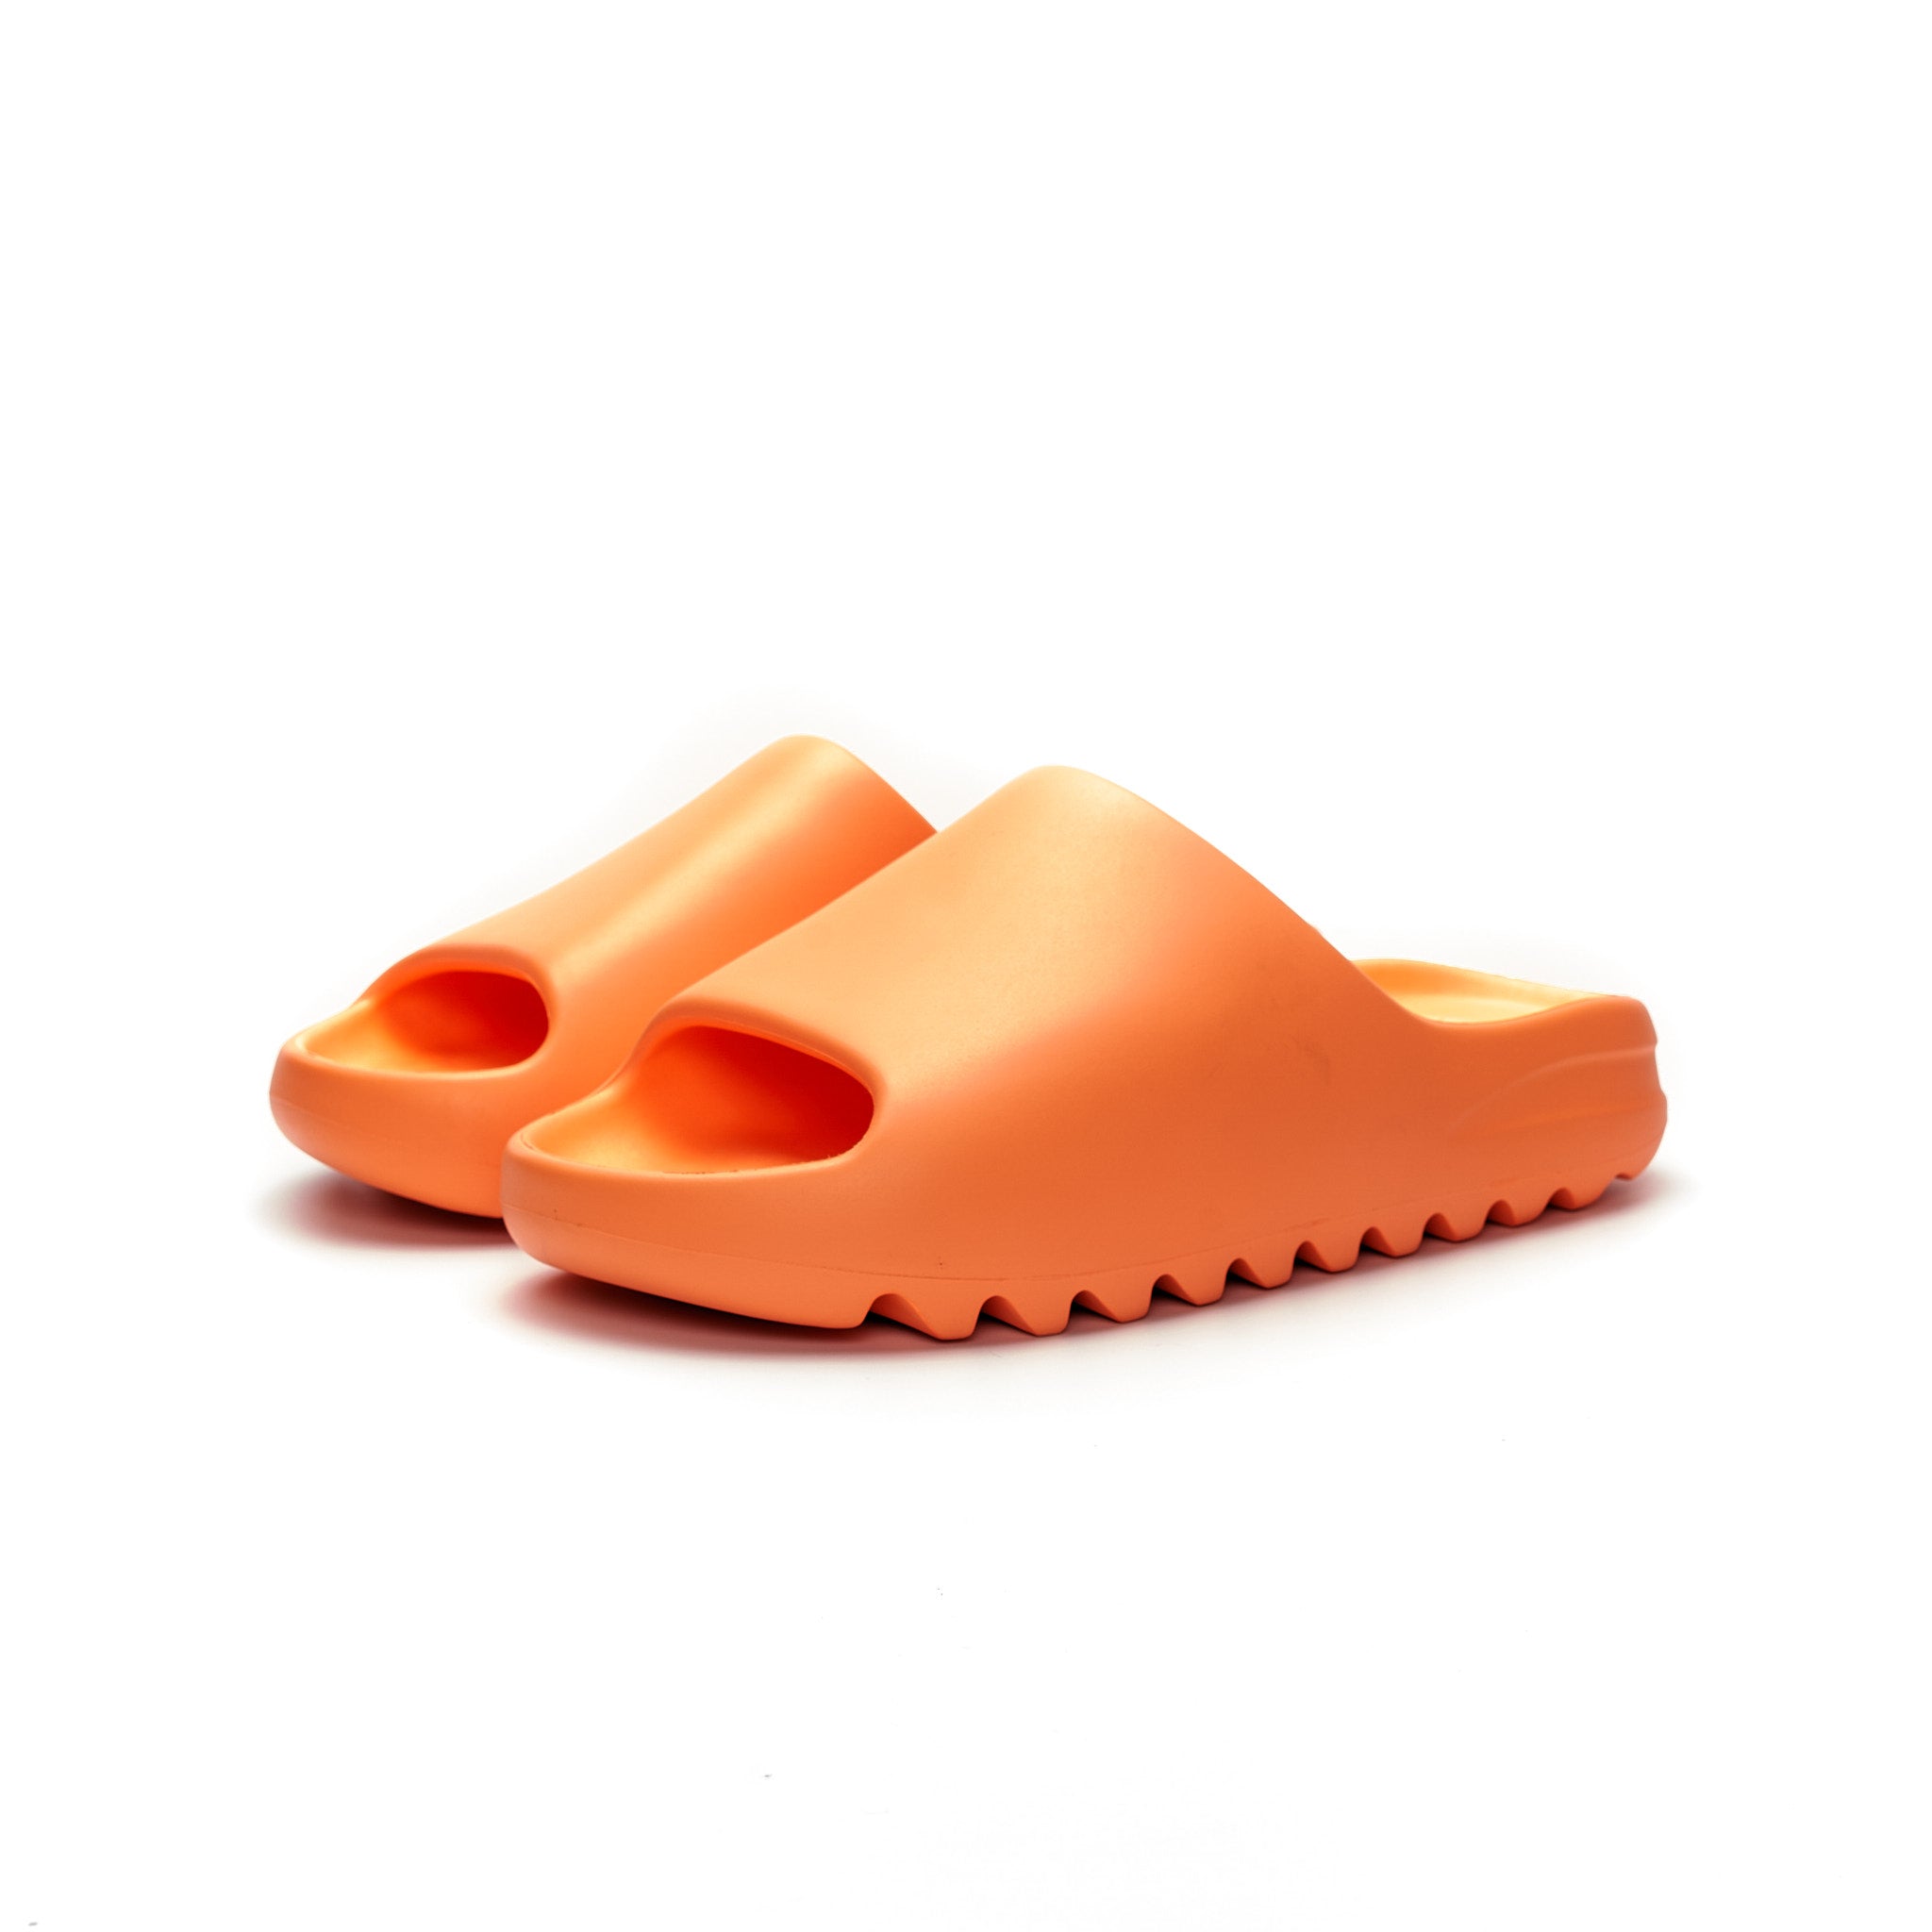 adidas yeezy SLIDE enflame orange 28.5cm - サンダル